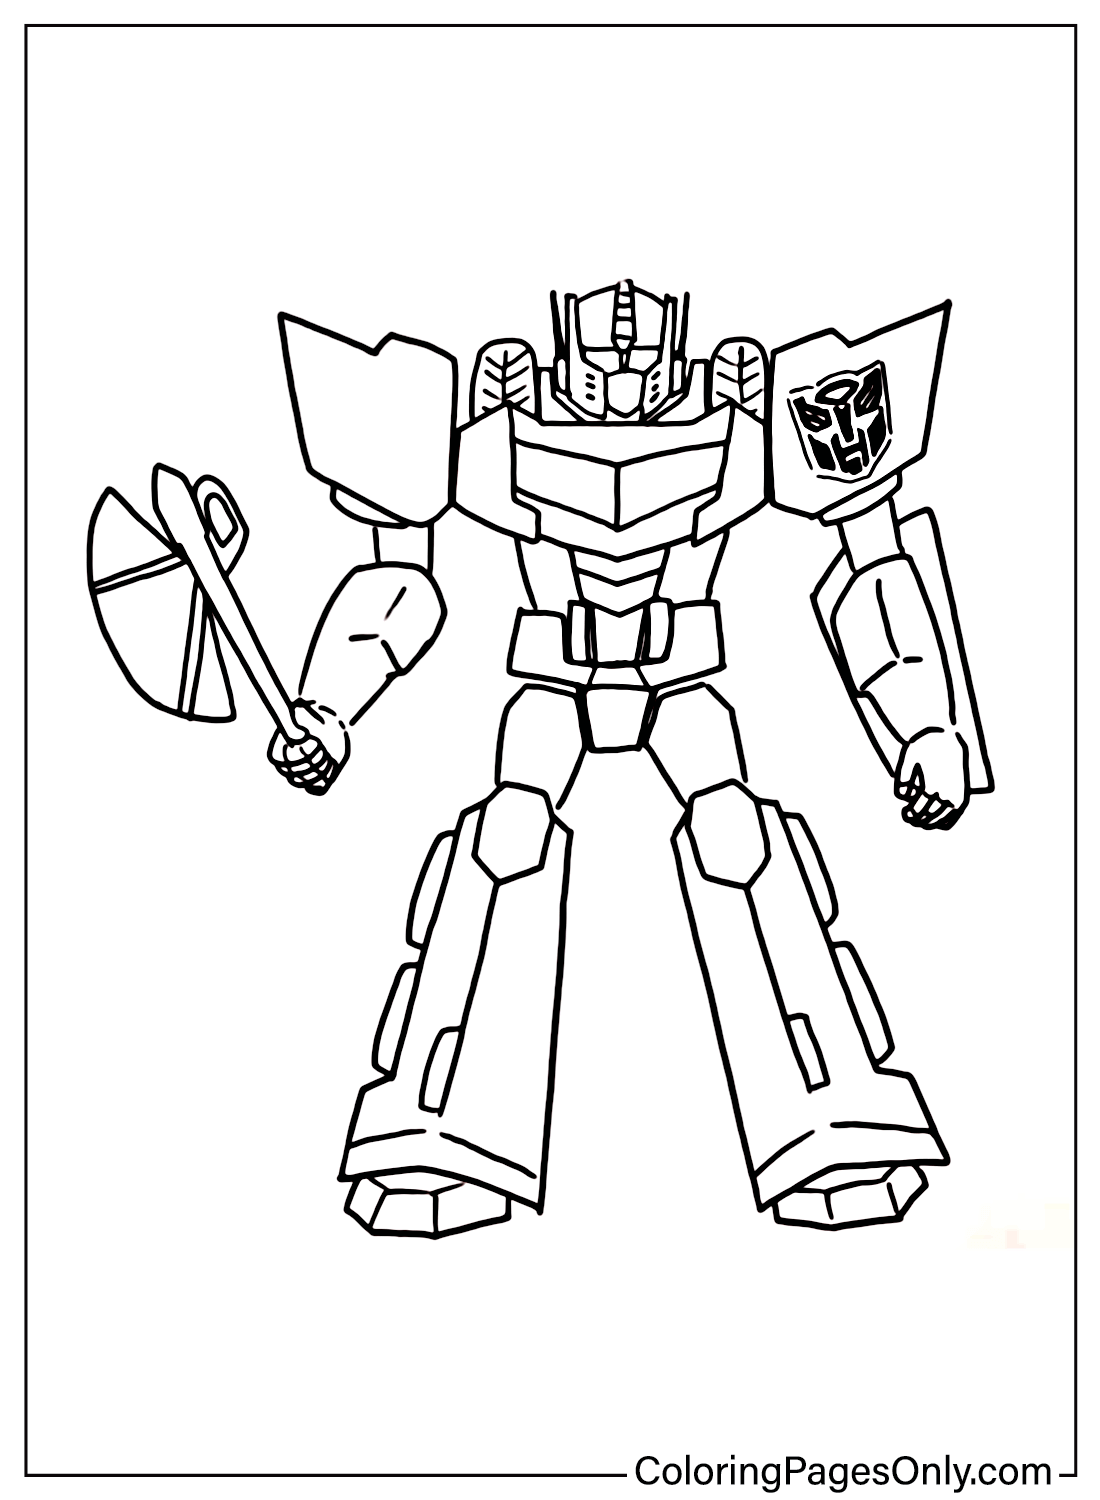 Dibujos para colorear Optimus Prime gratis de Transformers: El último caballero